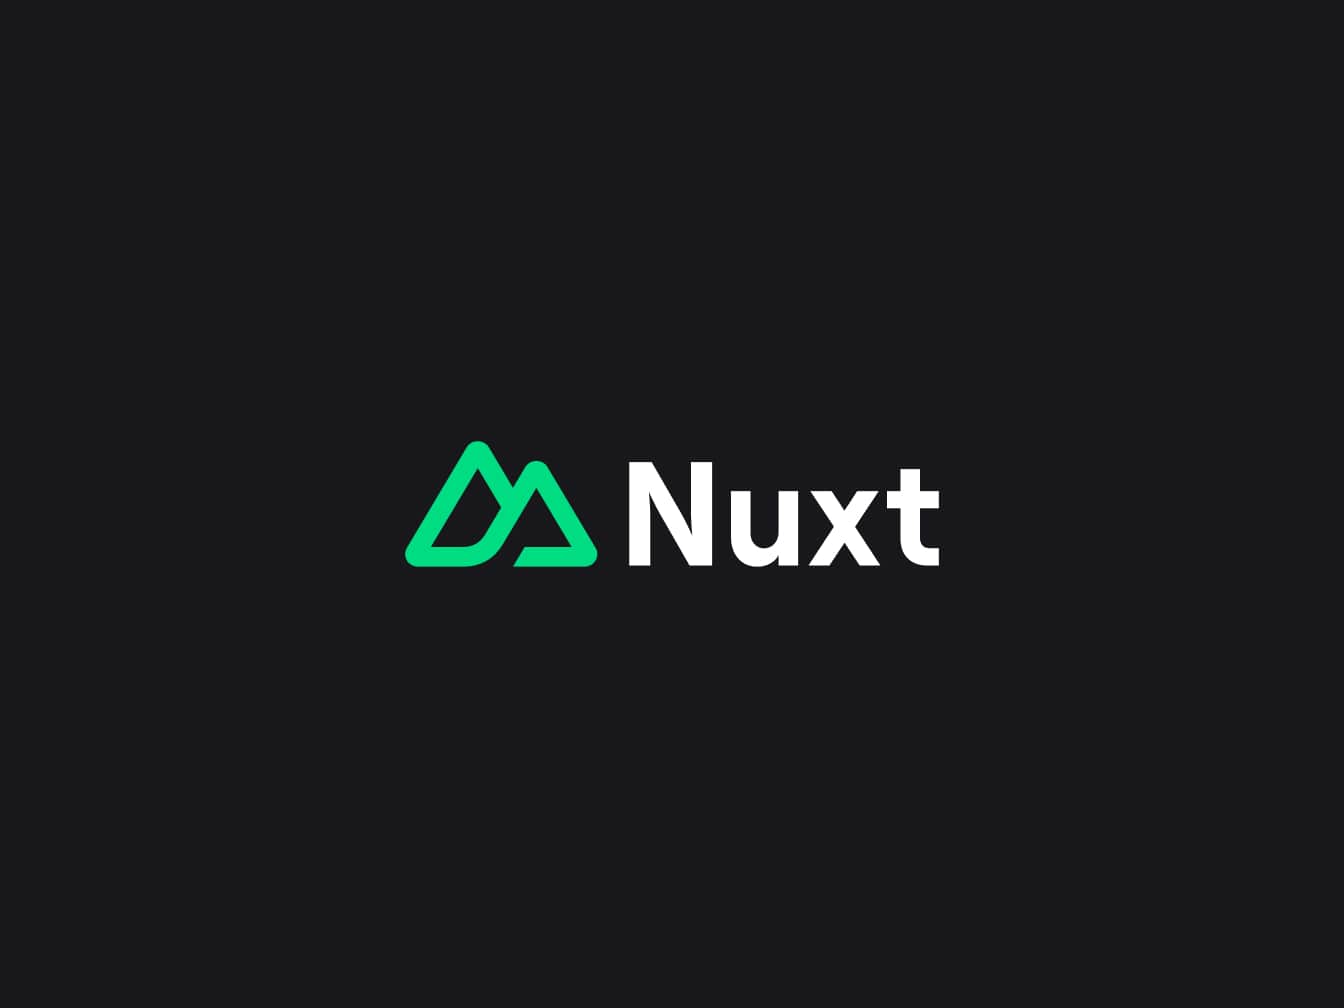 Nuxt.js logo image